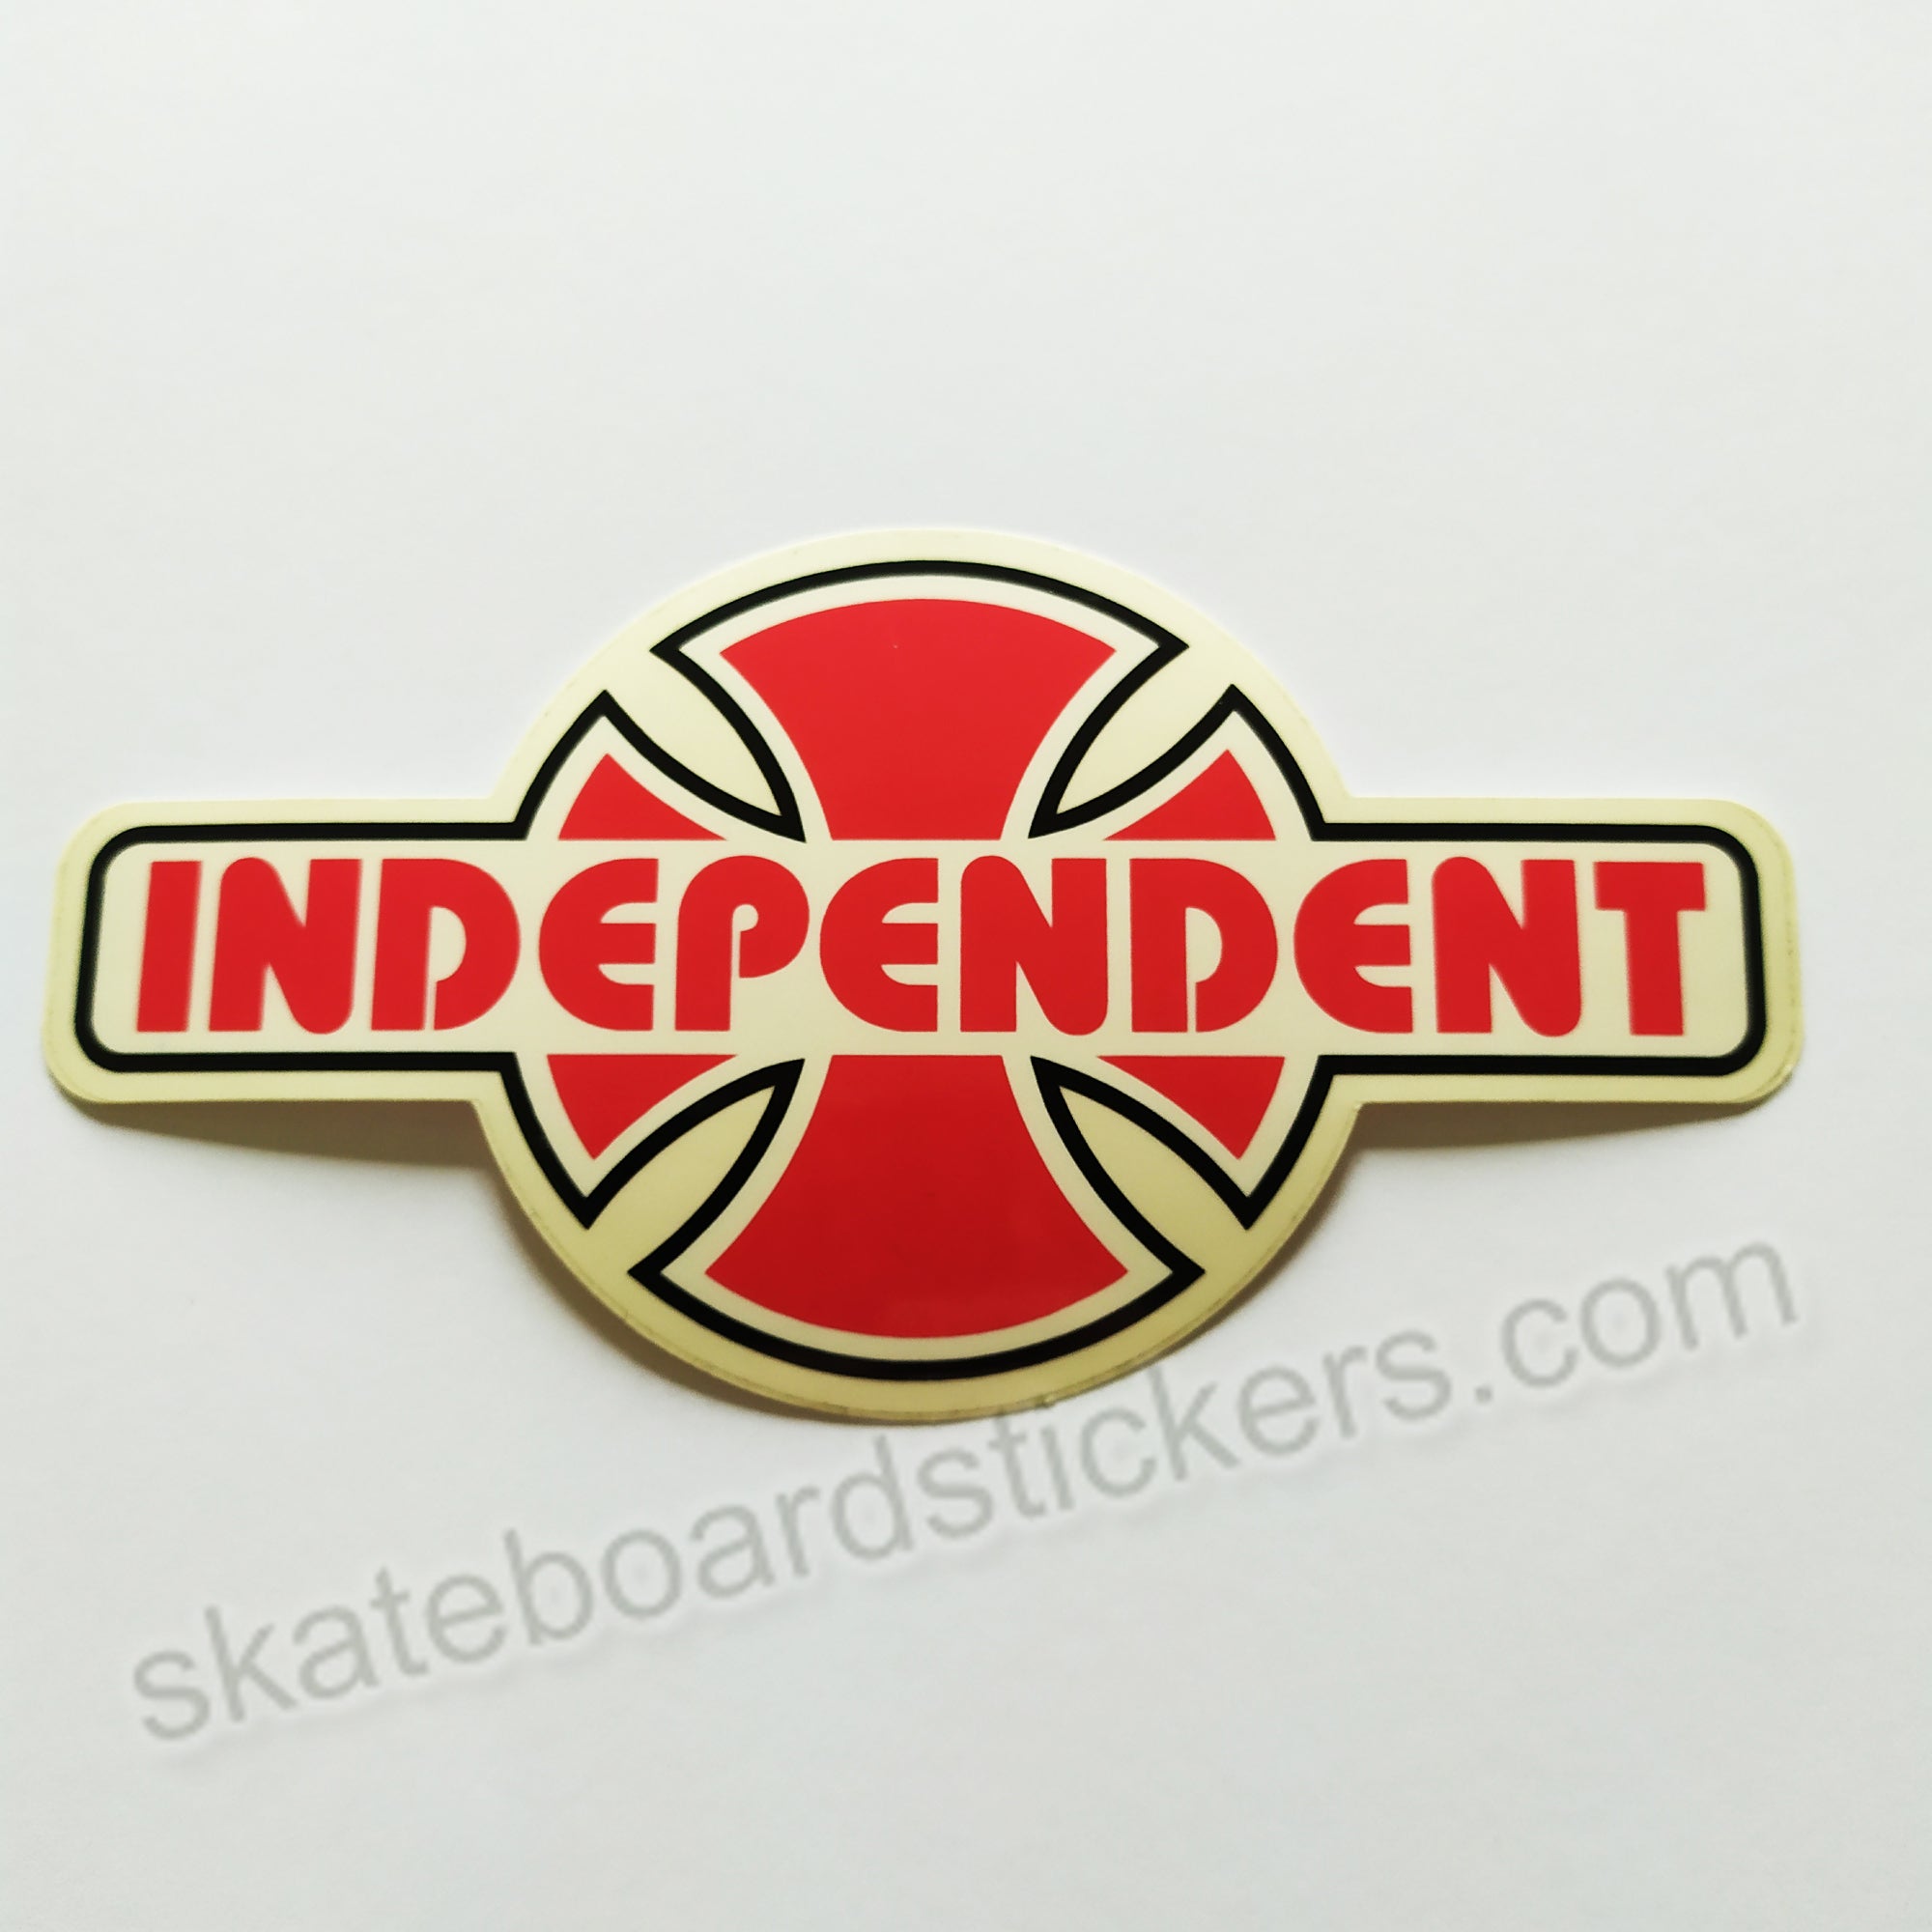 Independent Trucks Skateboard Sticker "OG Cross" Logo